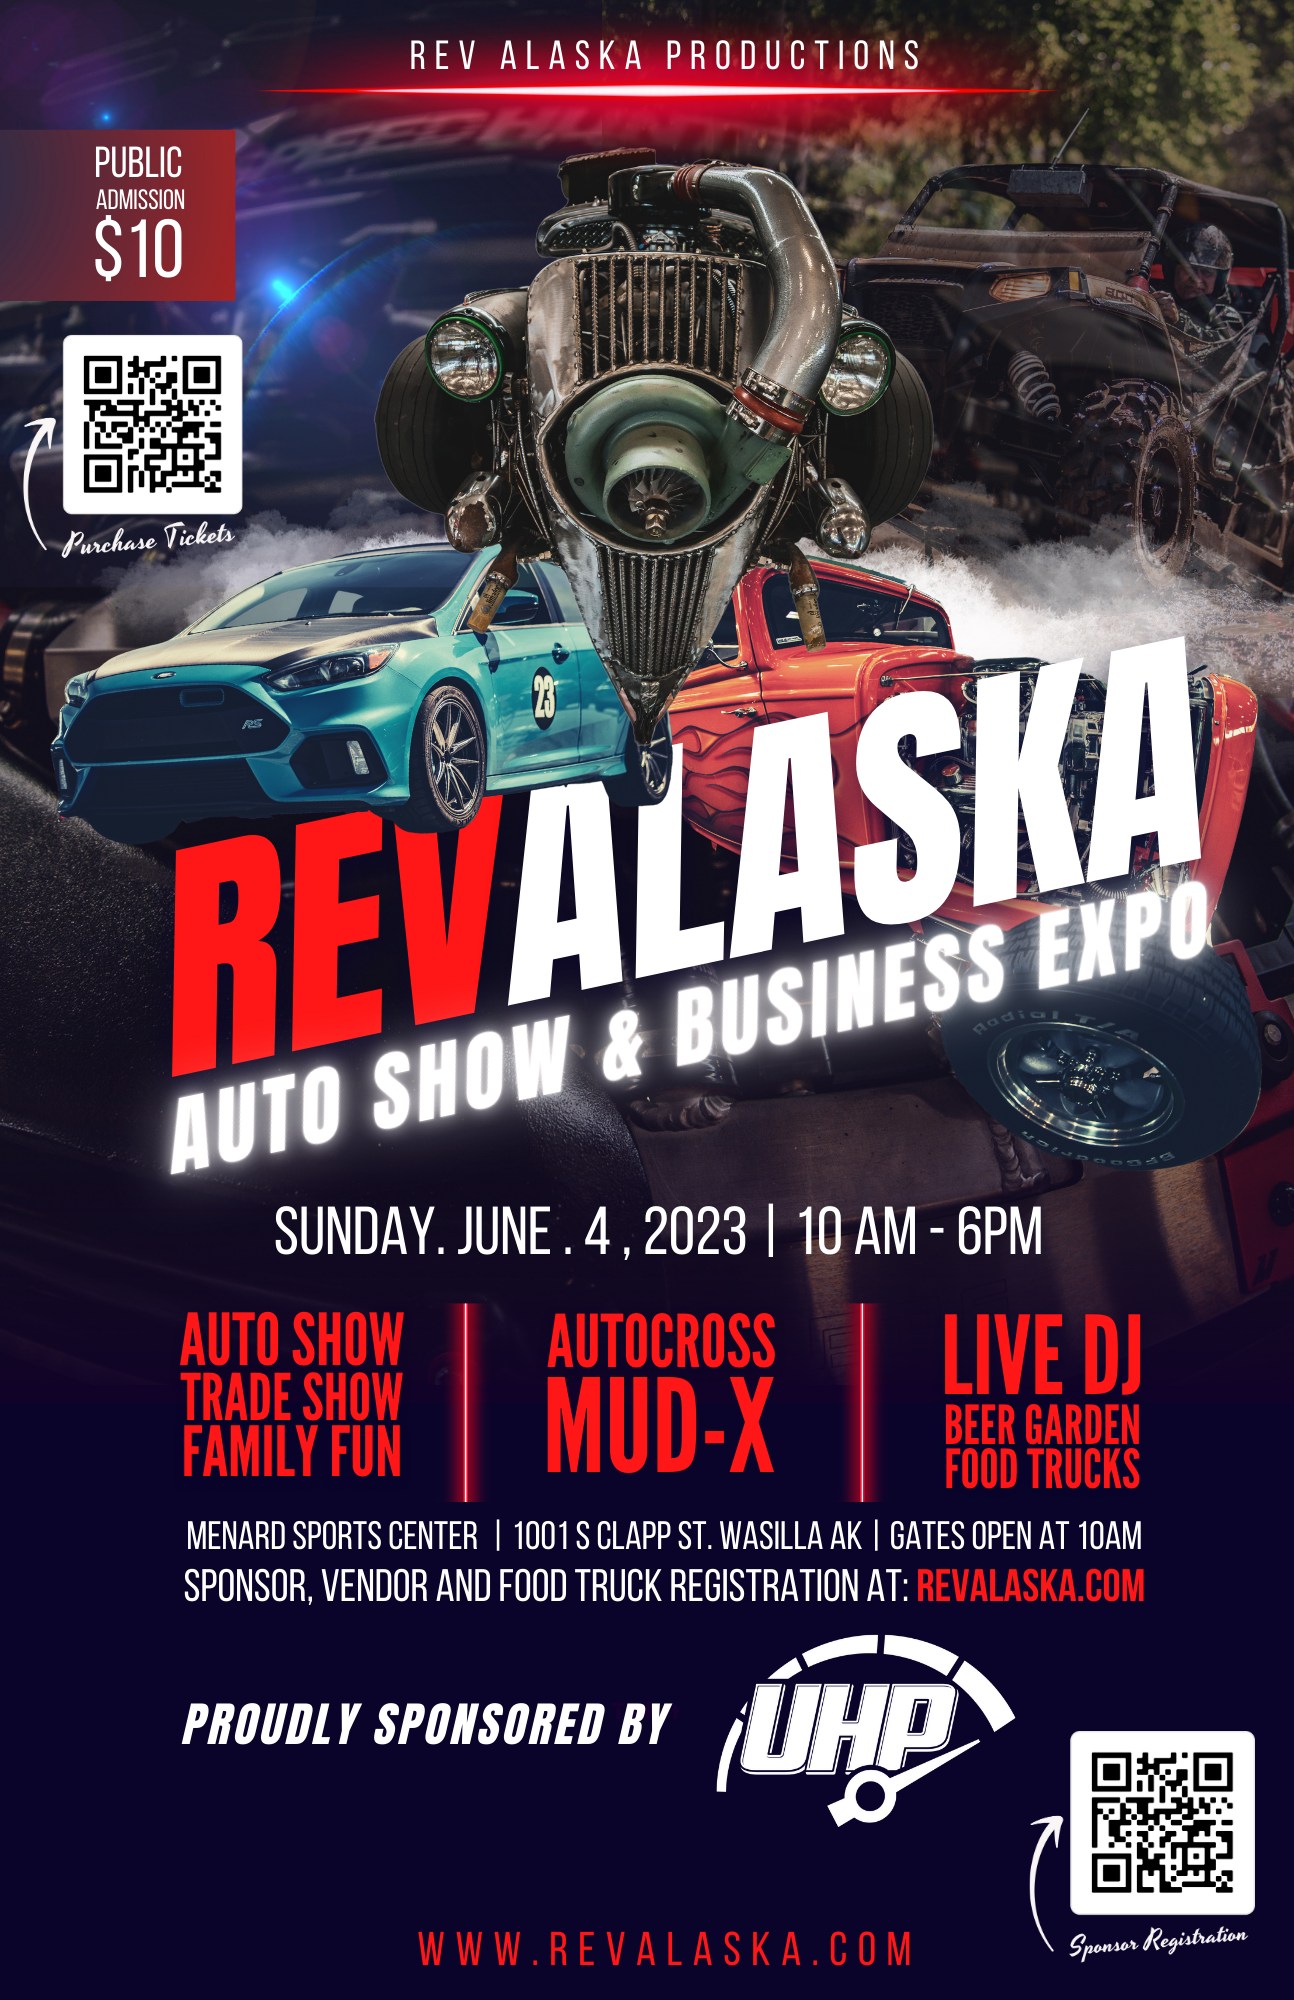 REV Alaska Auto Show & Expo